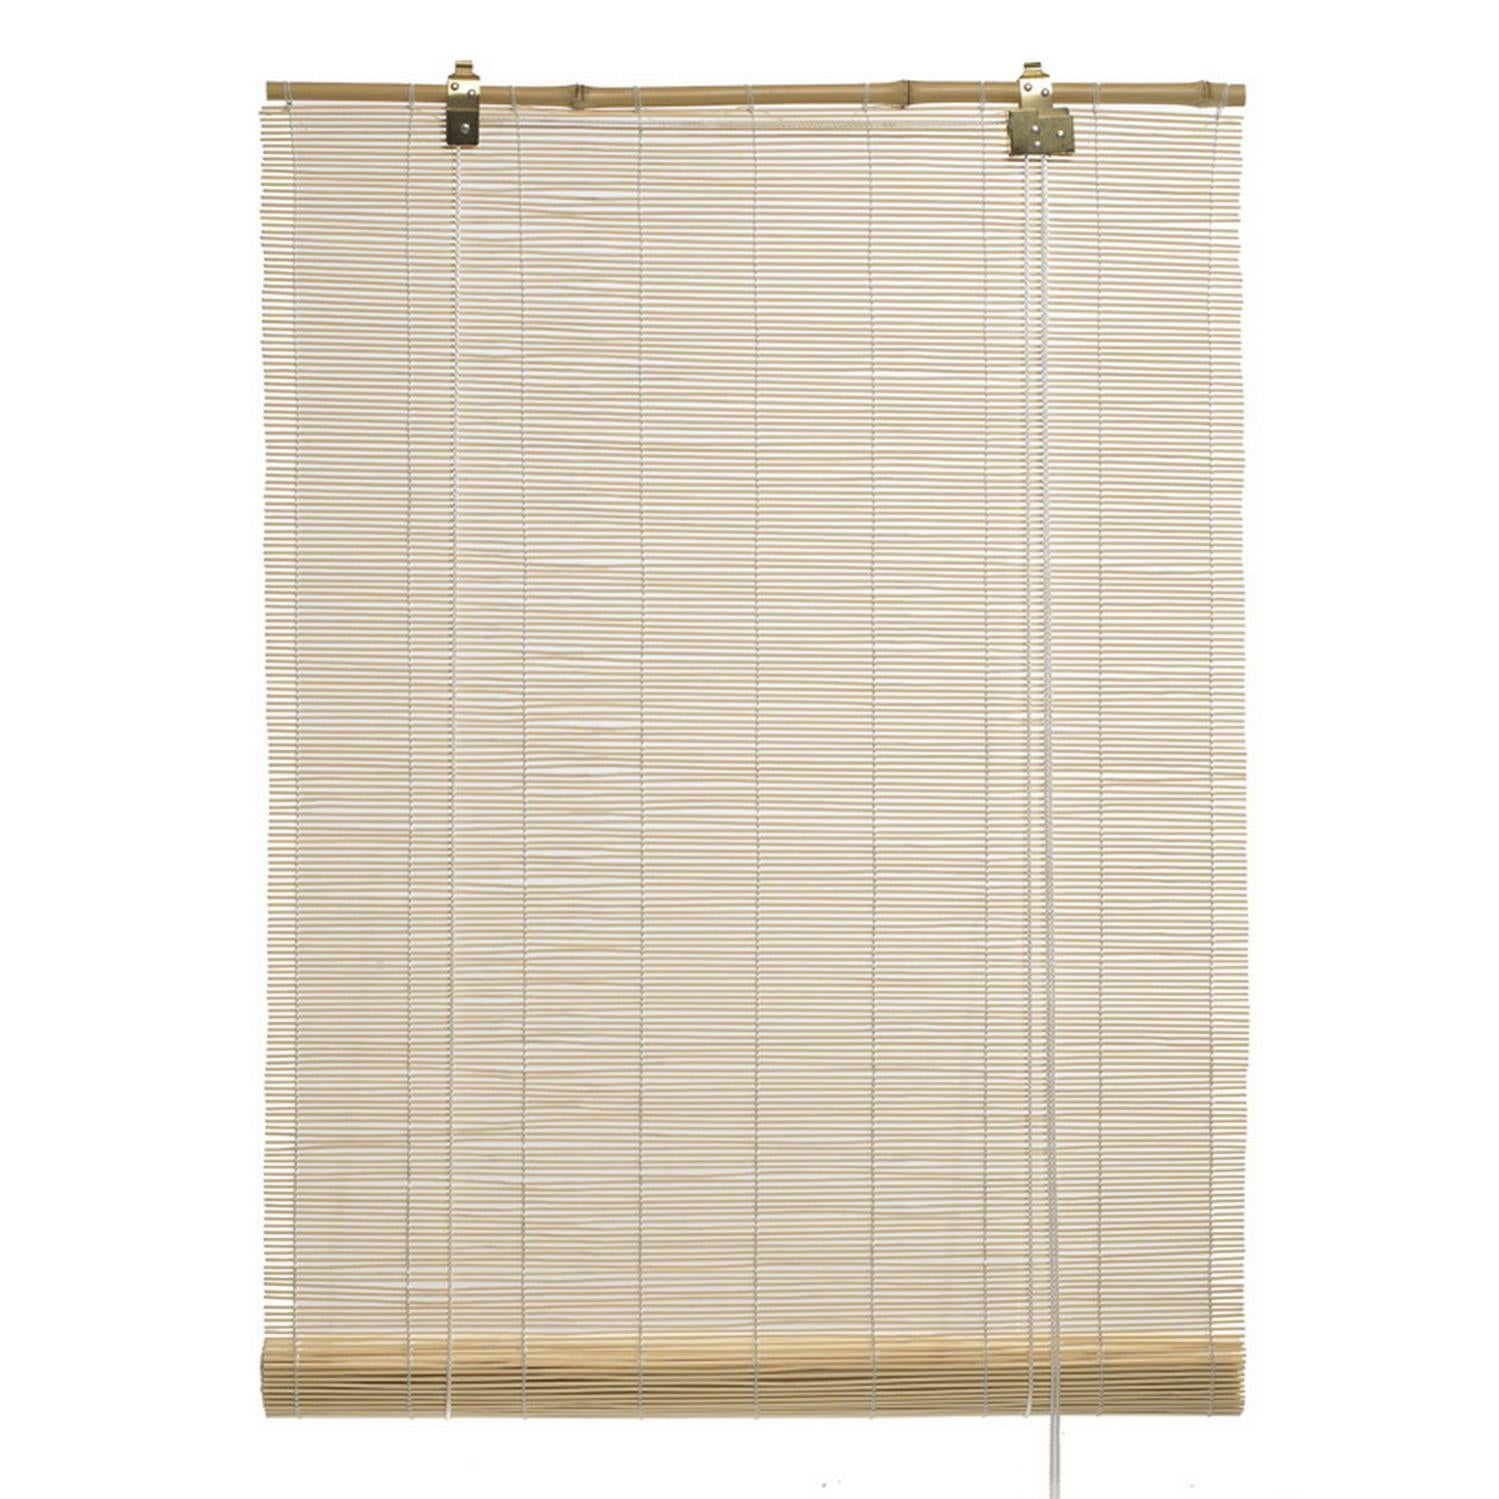 Store enrouleur aspect bambou Beige 50 x 200 cm Store enrouleur de protection sans perçage Toutes les dimensions sont disponibles dans notre boutique